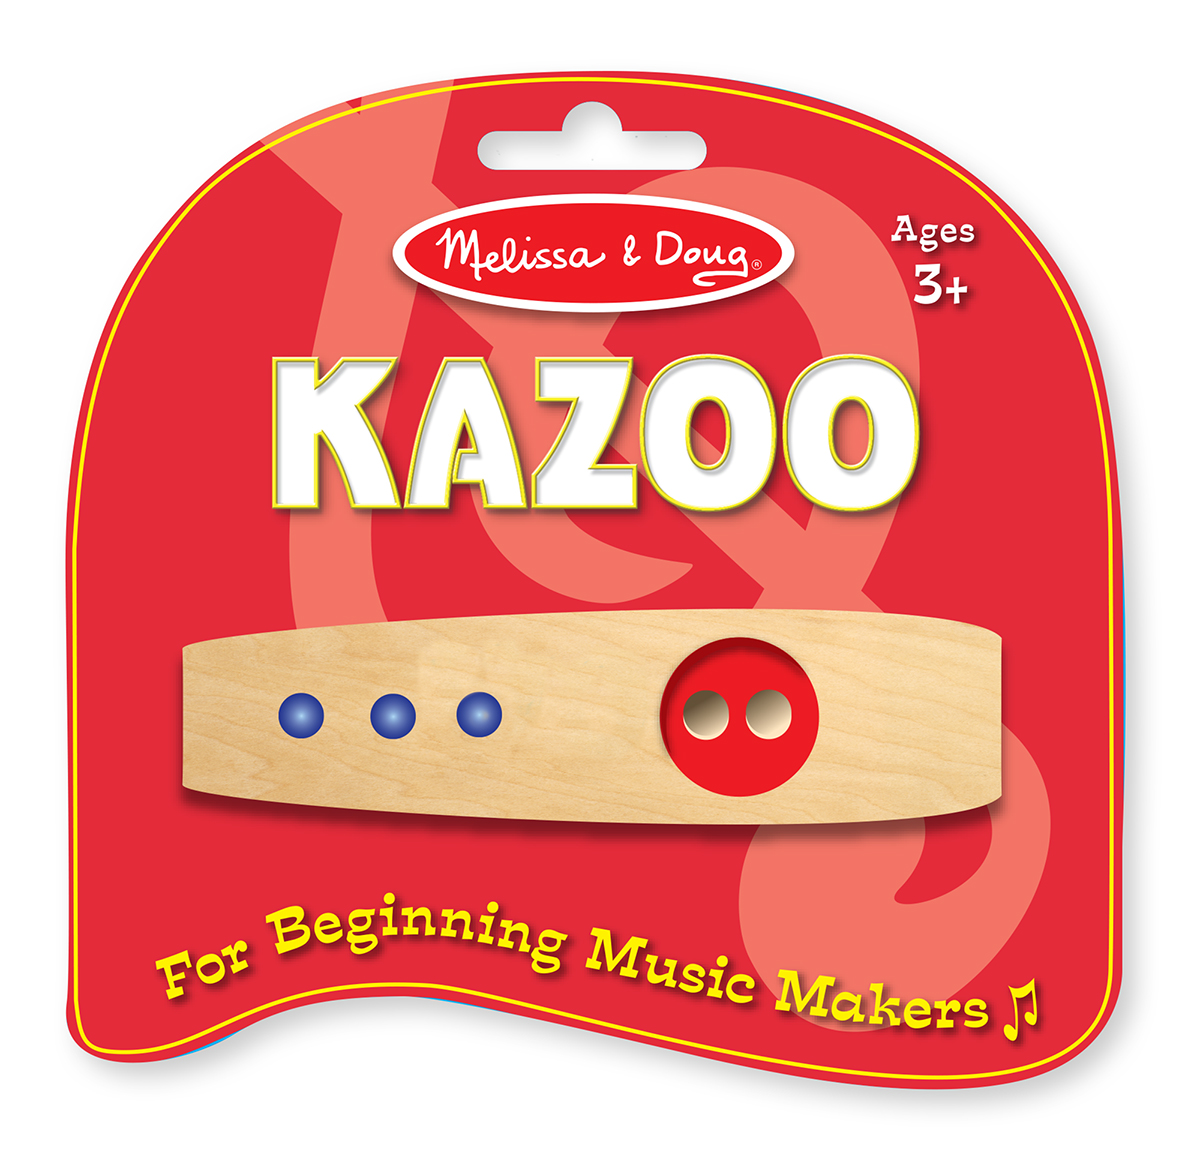 1300 Kazoo